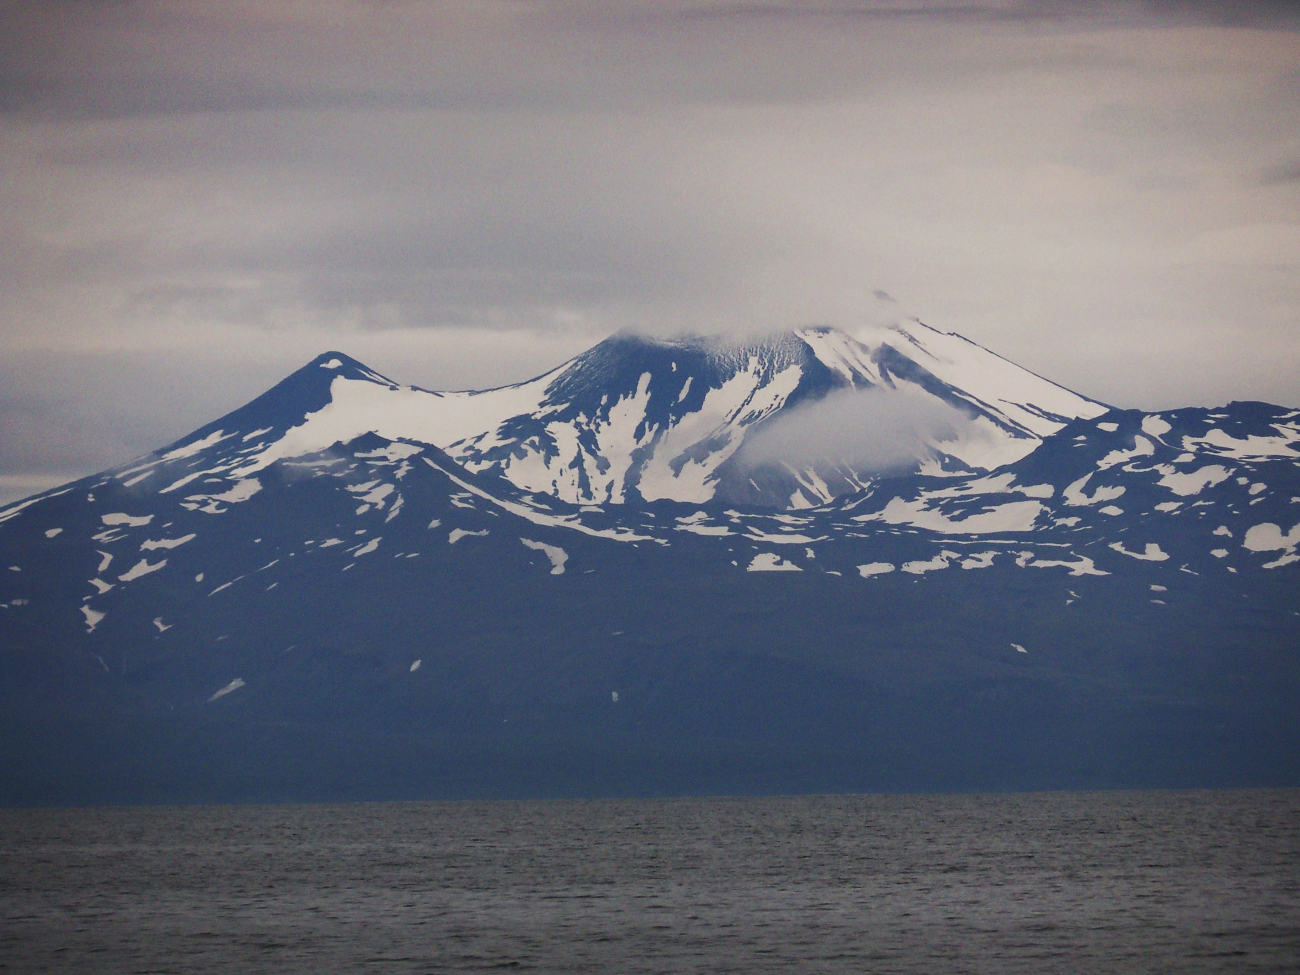 Mountain on the Alaska Peninsula